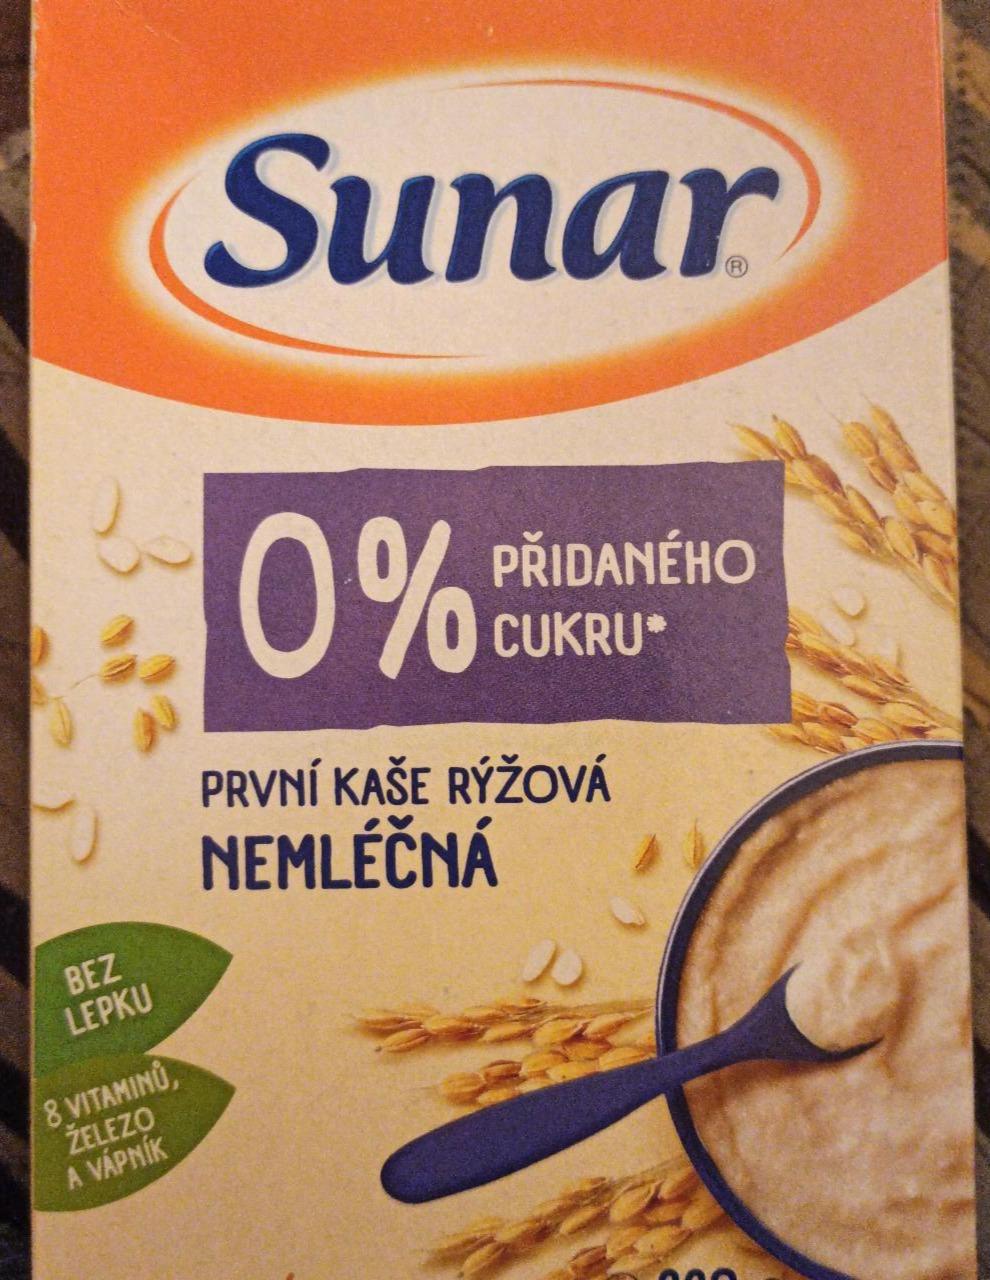 Fotografie - První kaše rýžová nemléčná 0% cukru Sunar